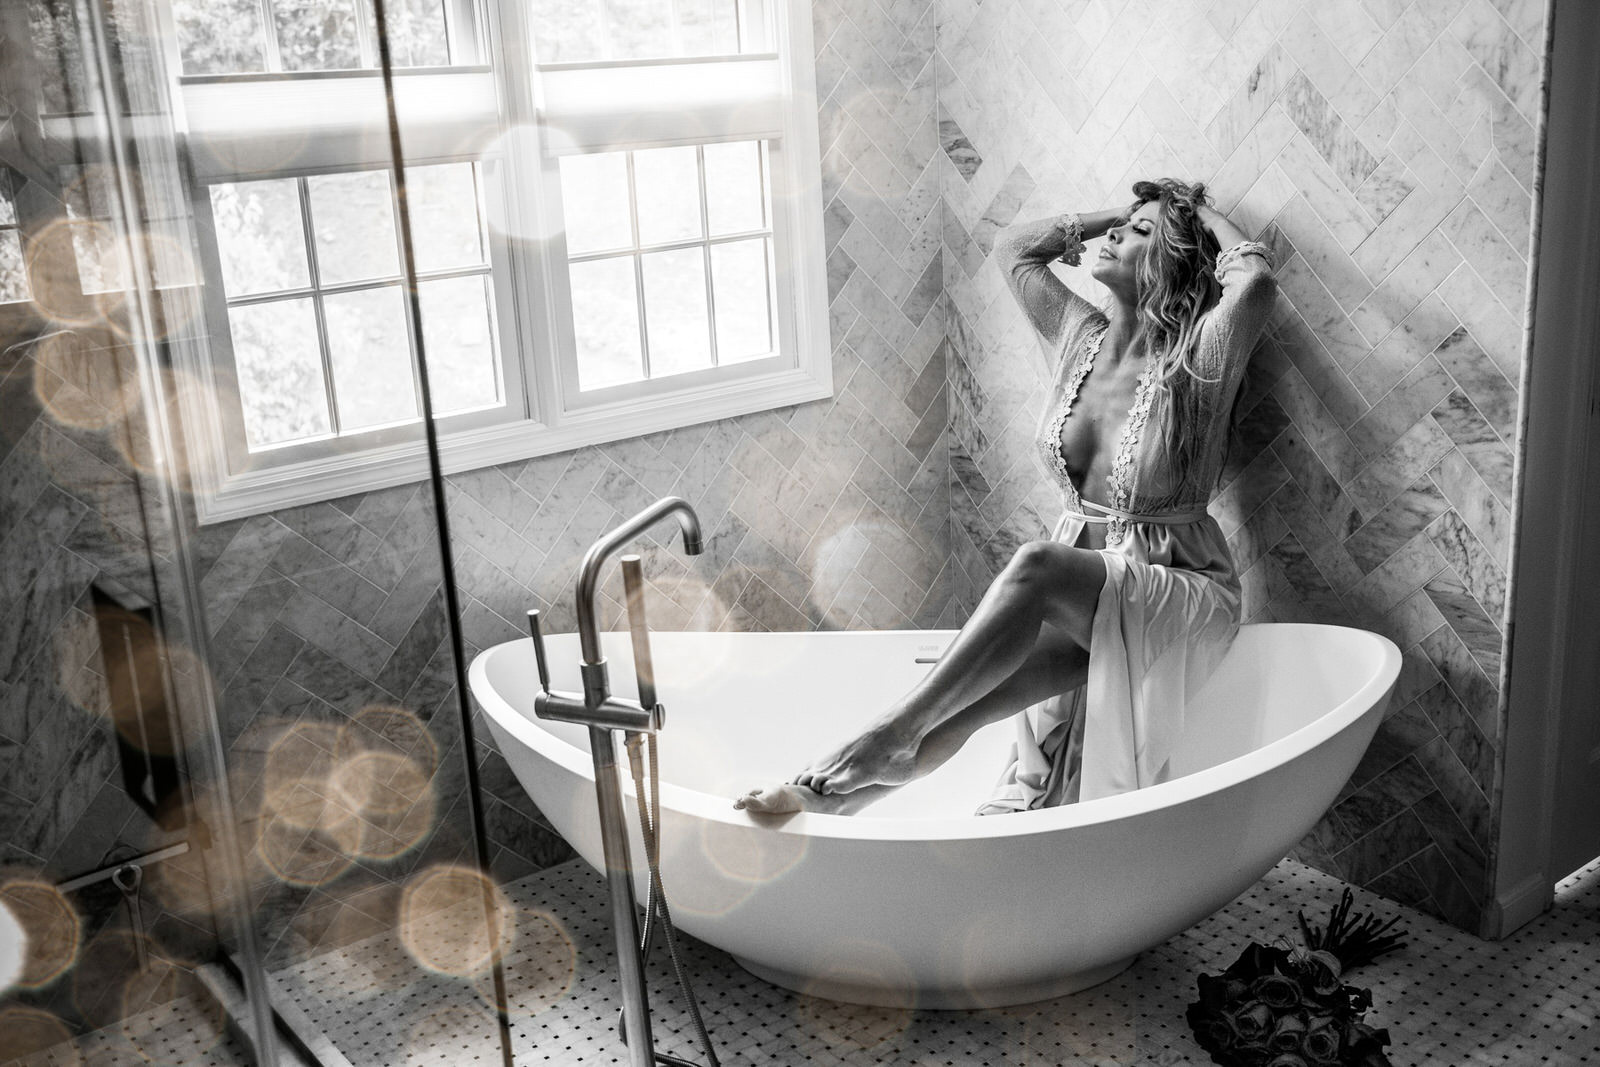 Woman in lingerie in bathtub